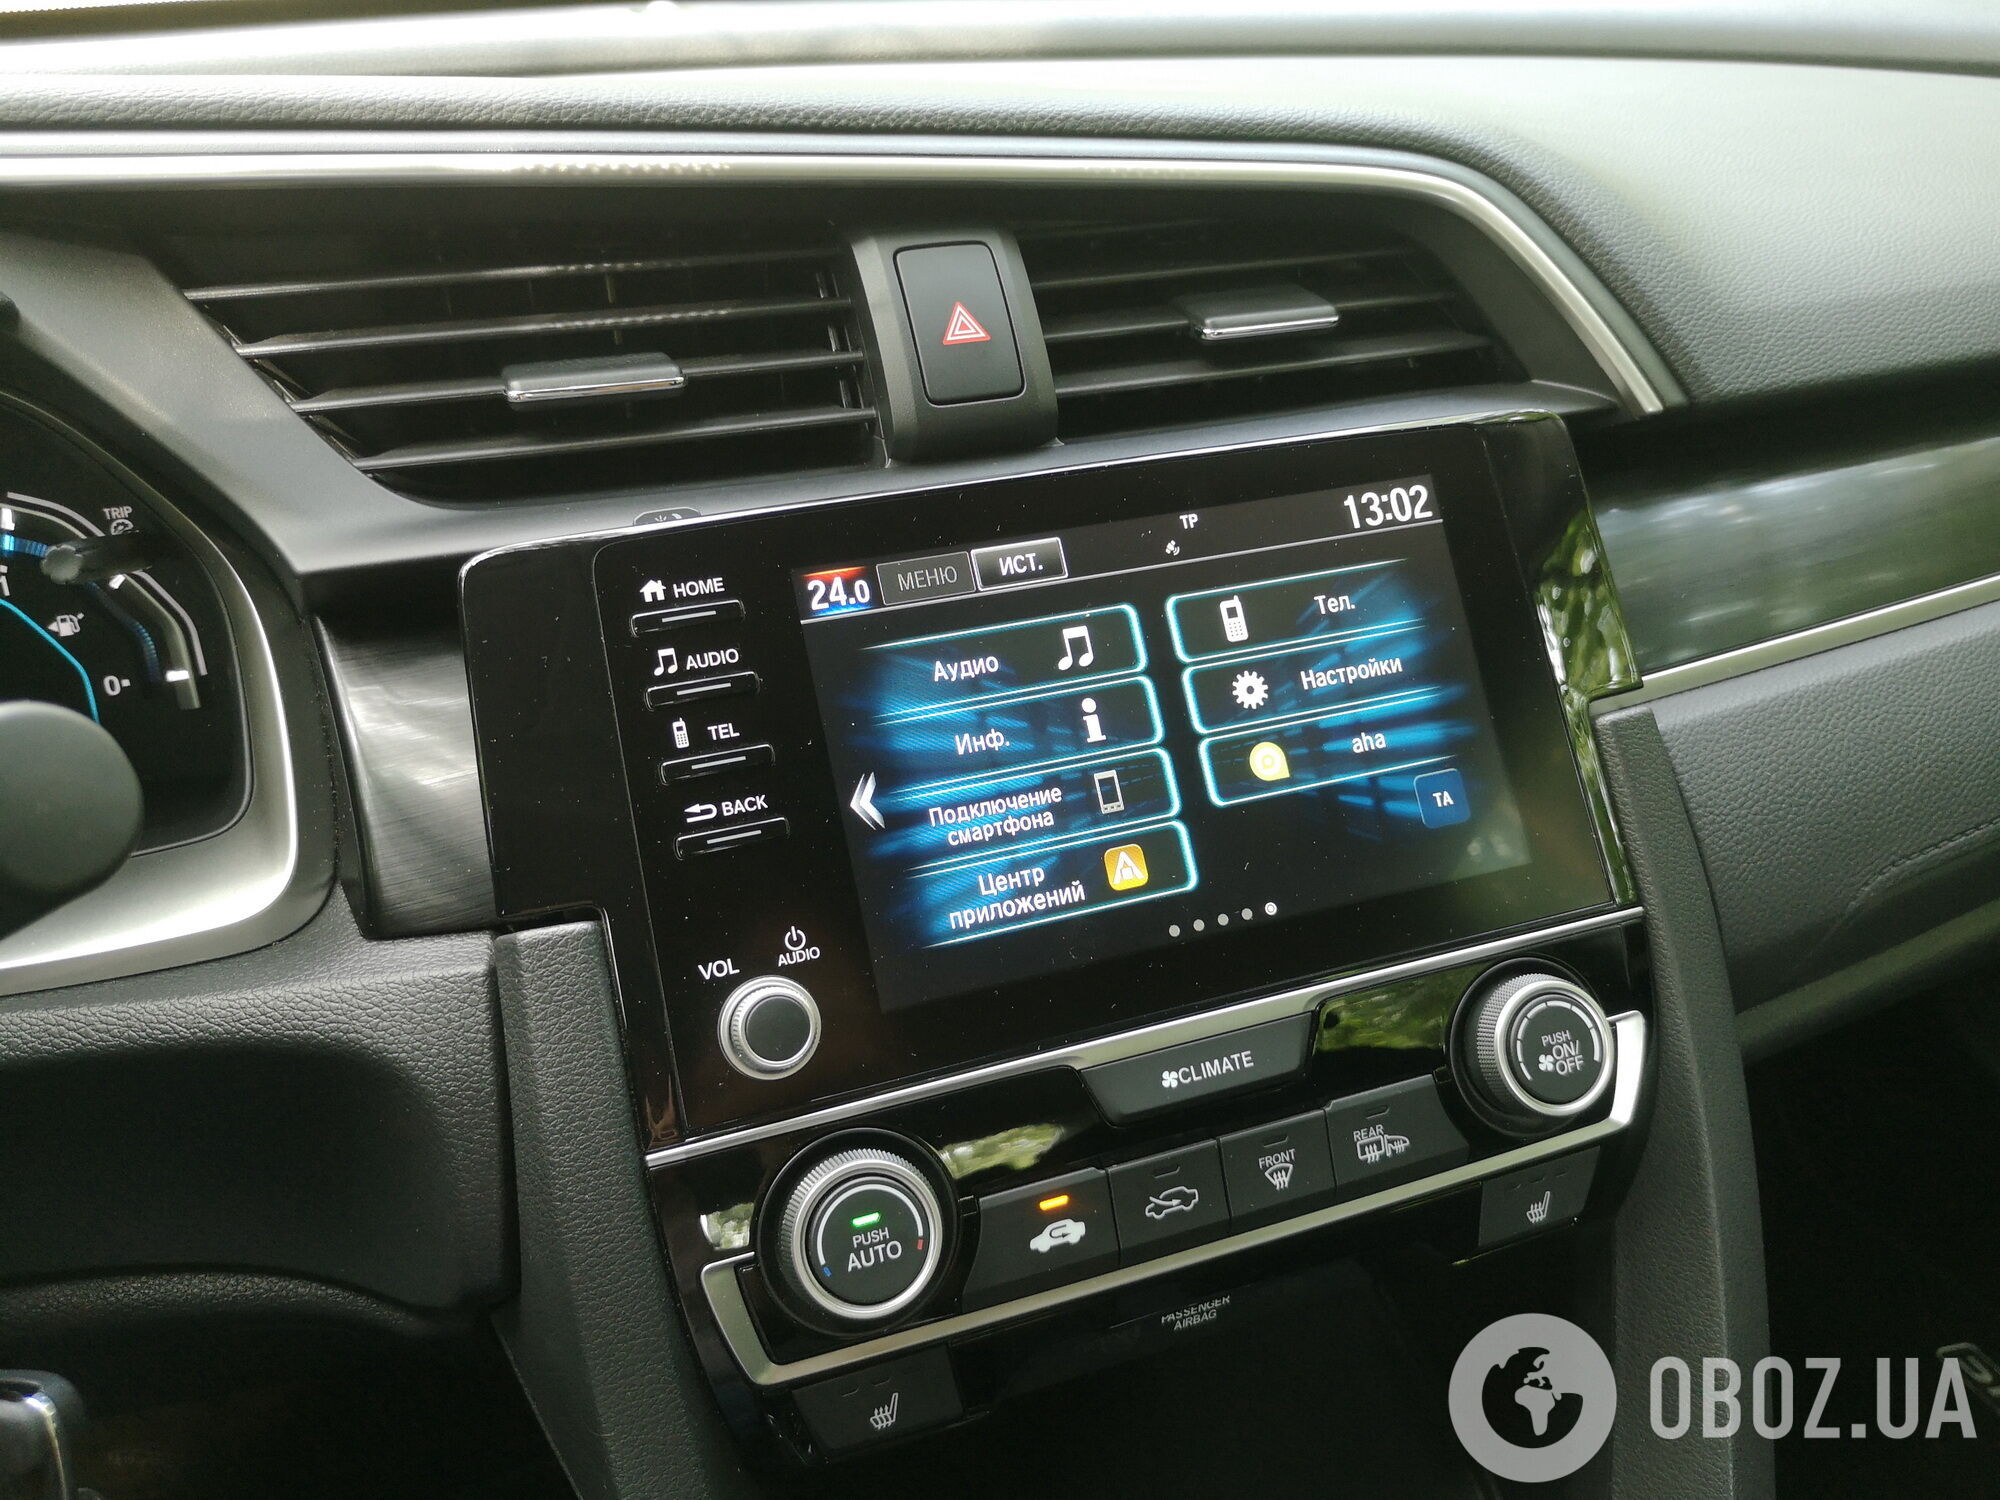 Нова інформаційно-розважальна система оснащена 8-дюймовим сенсорним дисплеєм та підтримує Apple CarPlay та Android Auto